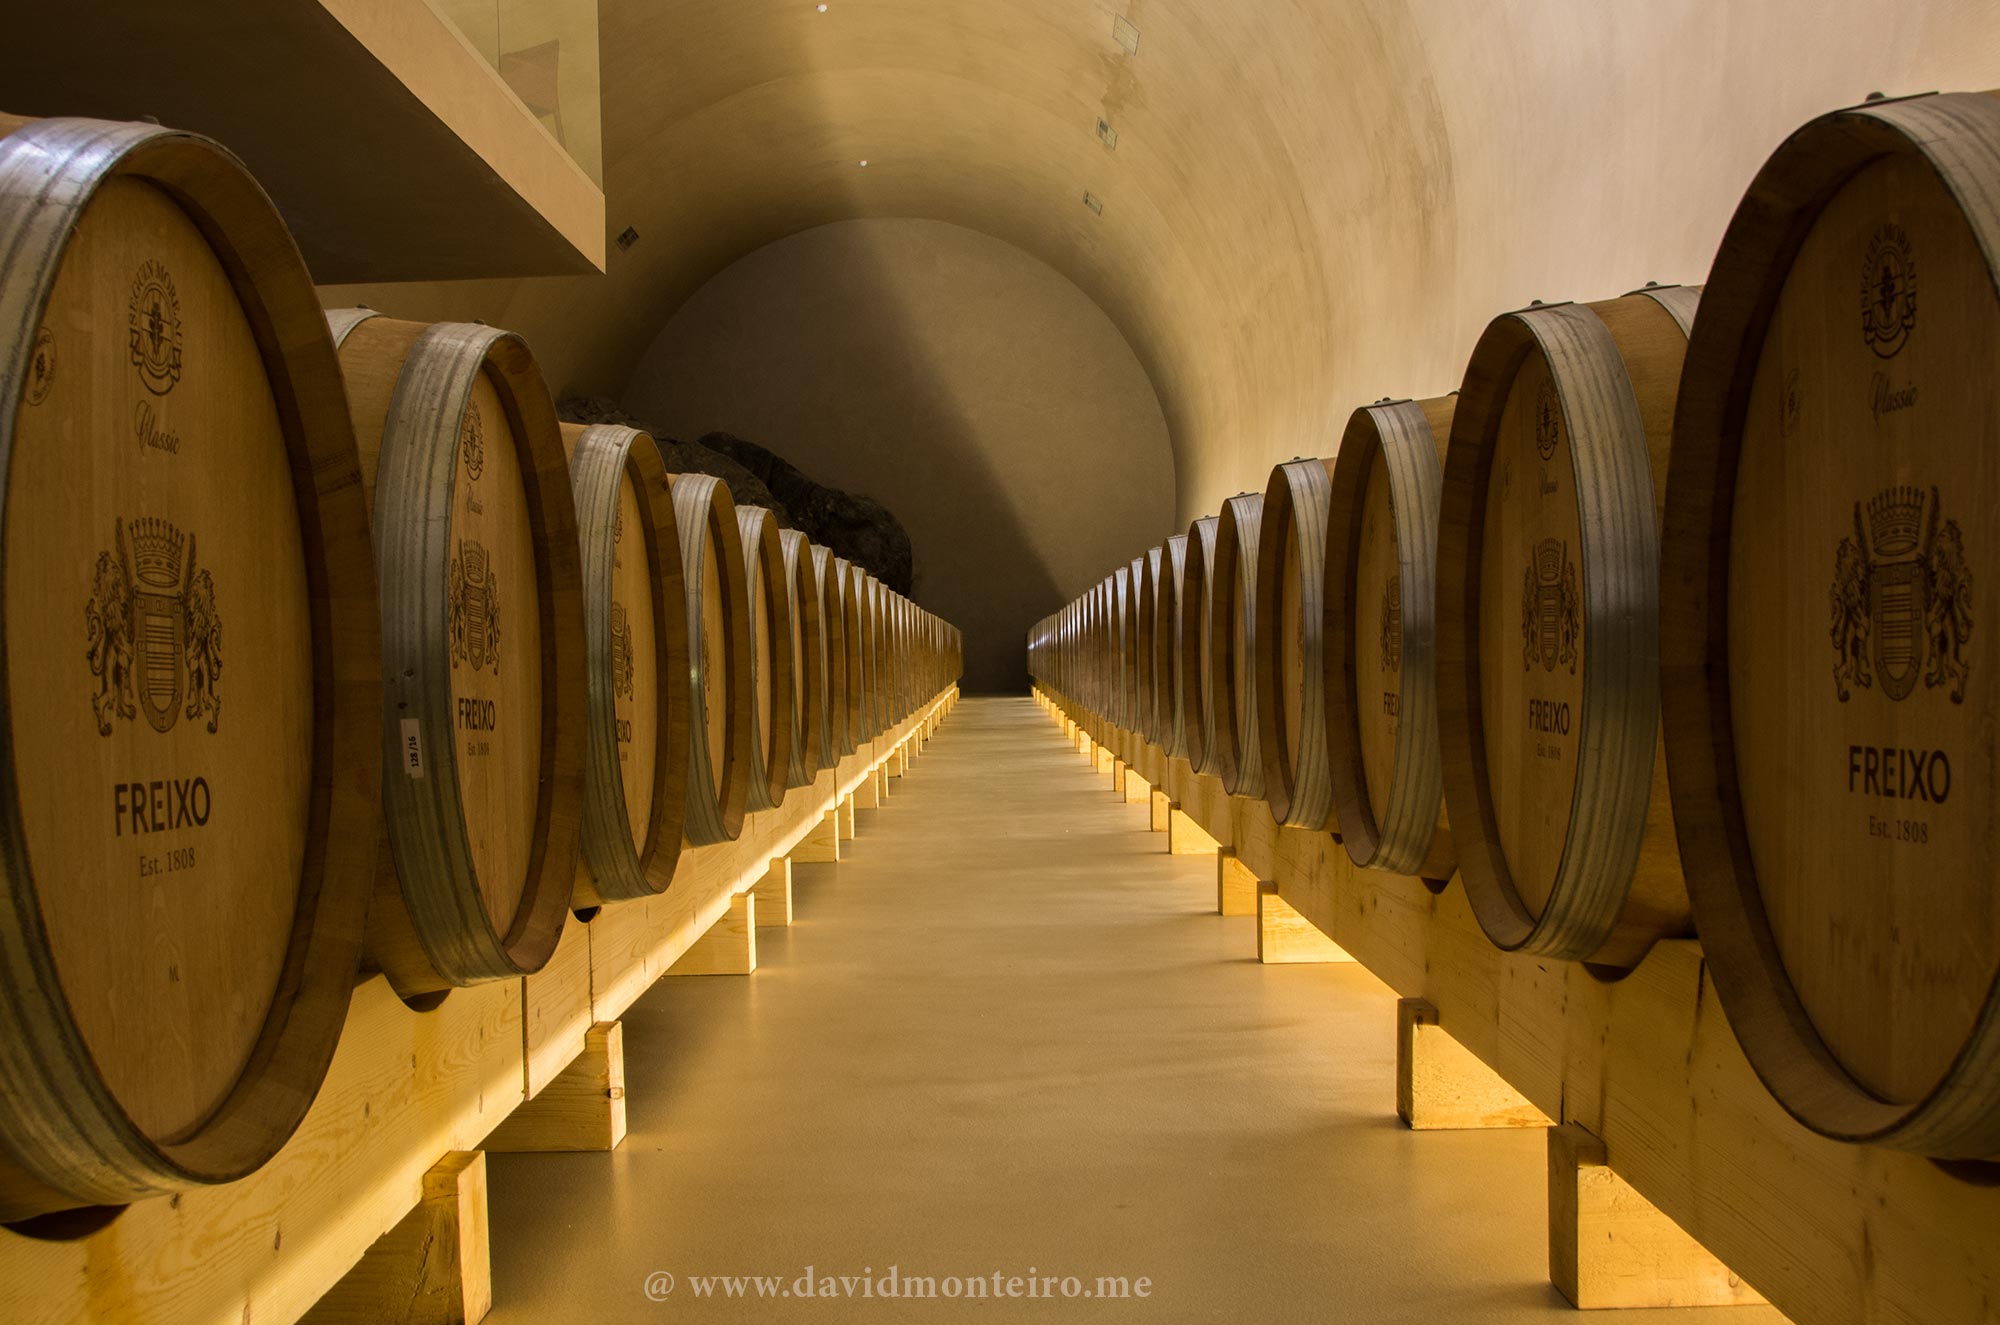 Wine cellar Herdade do Freixo